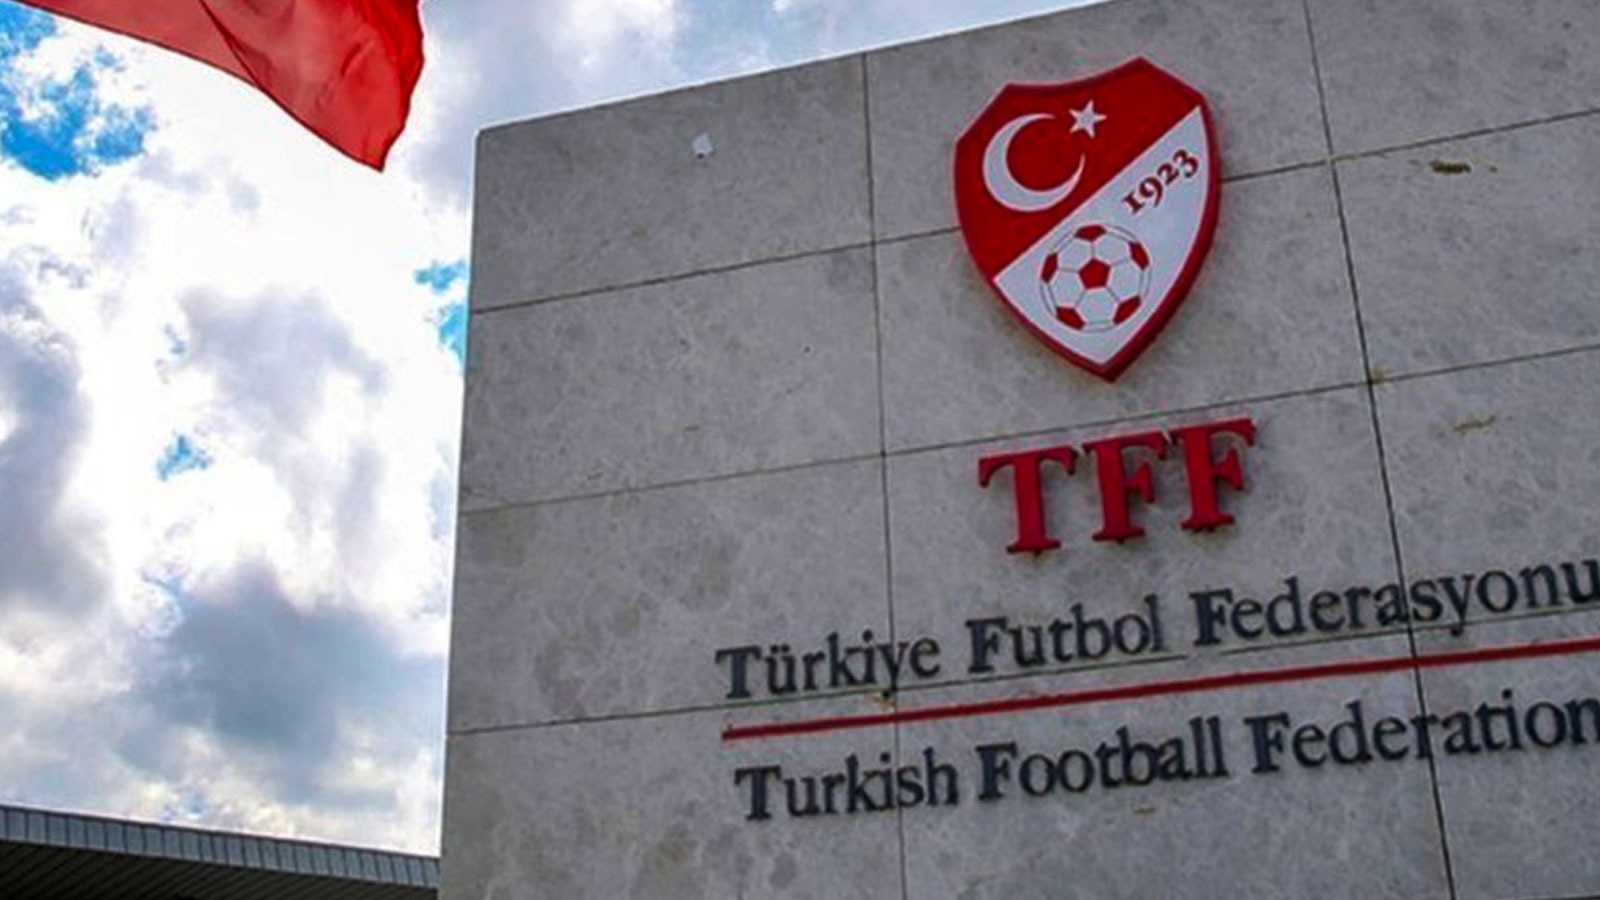 Karbel Karaköprü Belediyesporlu futbolcuya ceza;